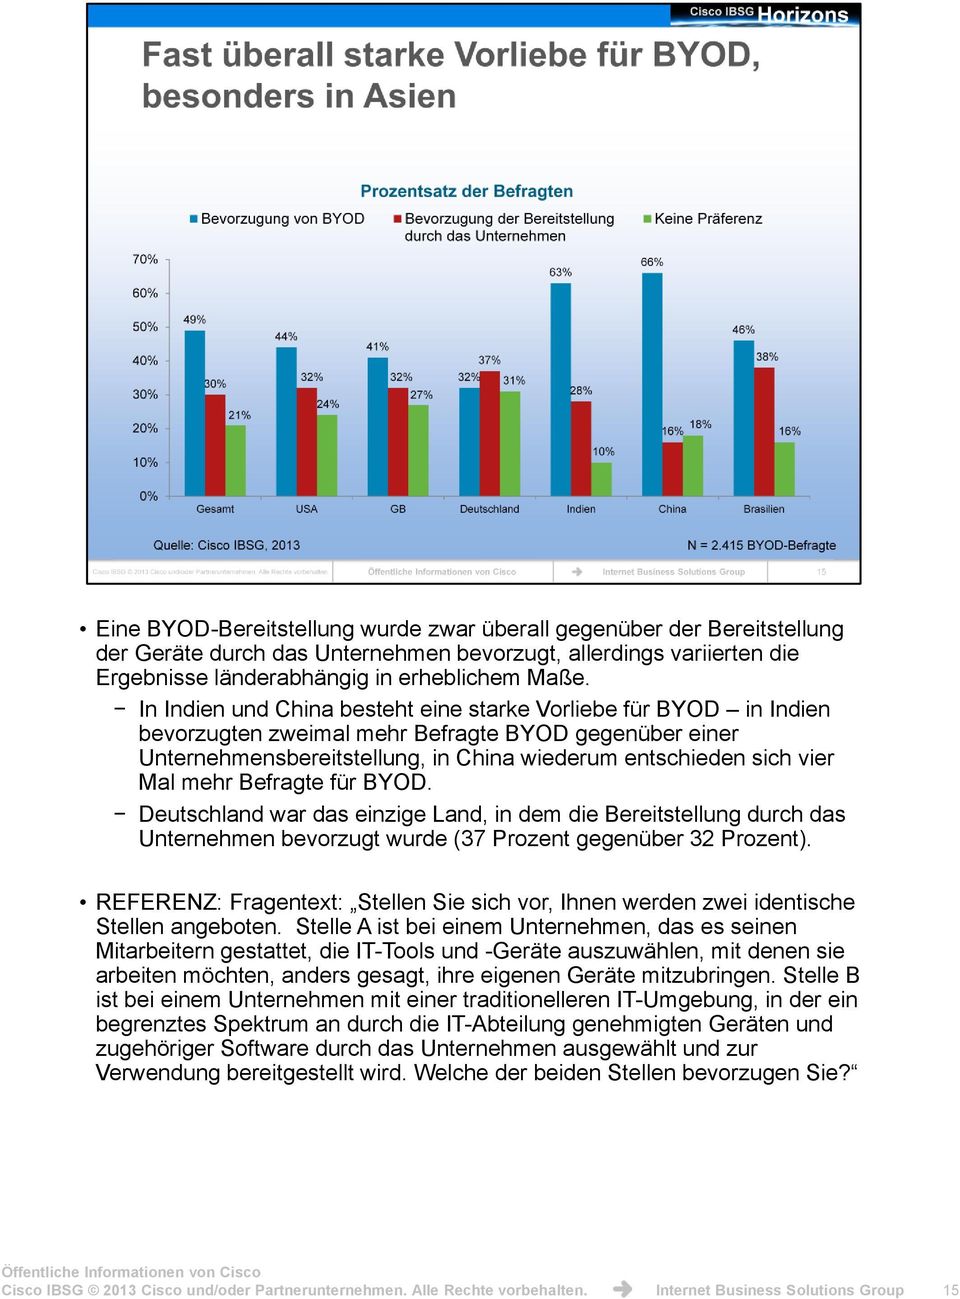 Befragte für BYOD. Deutschland war das einzige Land, in dem die Bereitstellung durch das Unternehmen bevorzugt wurde (37 Prozent gegenüber 32 Prozent).